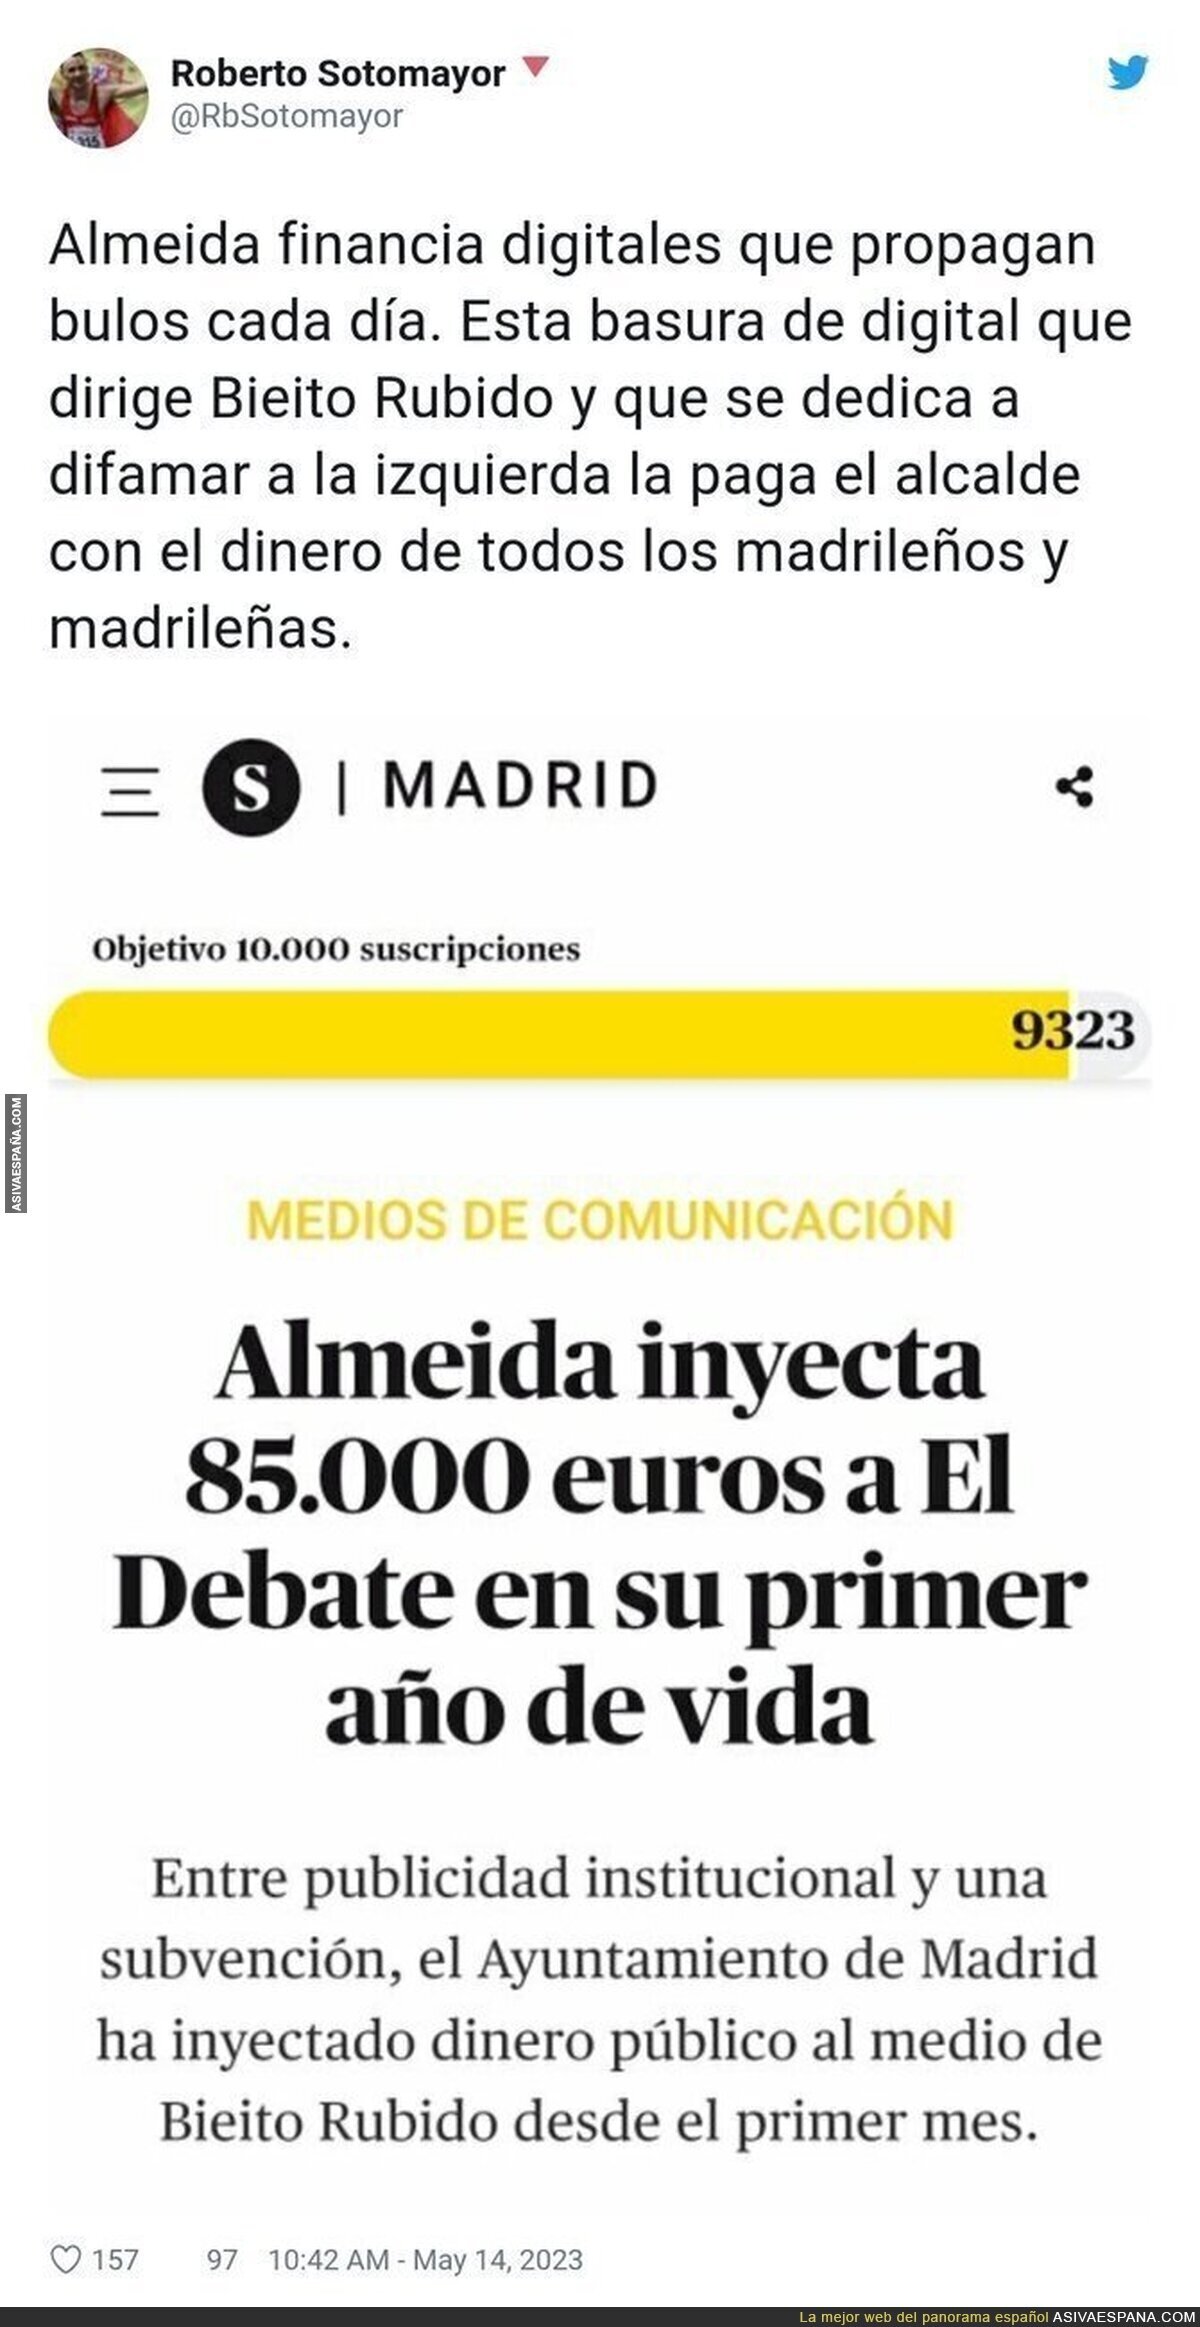 Los intereses de Almeida inyectando dinero público a diarios que publican bulos